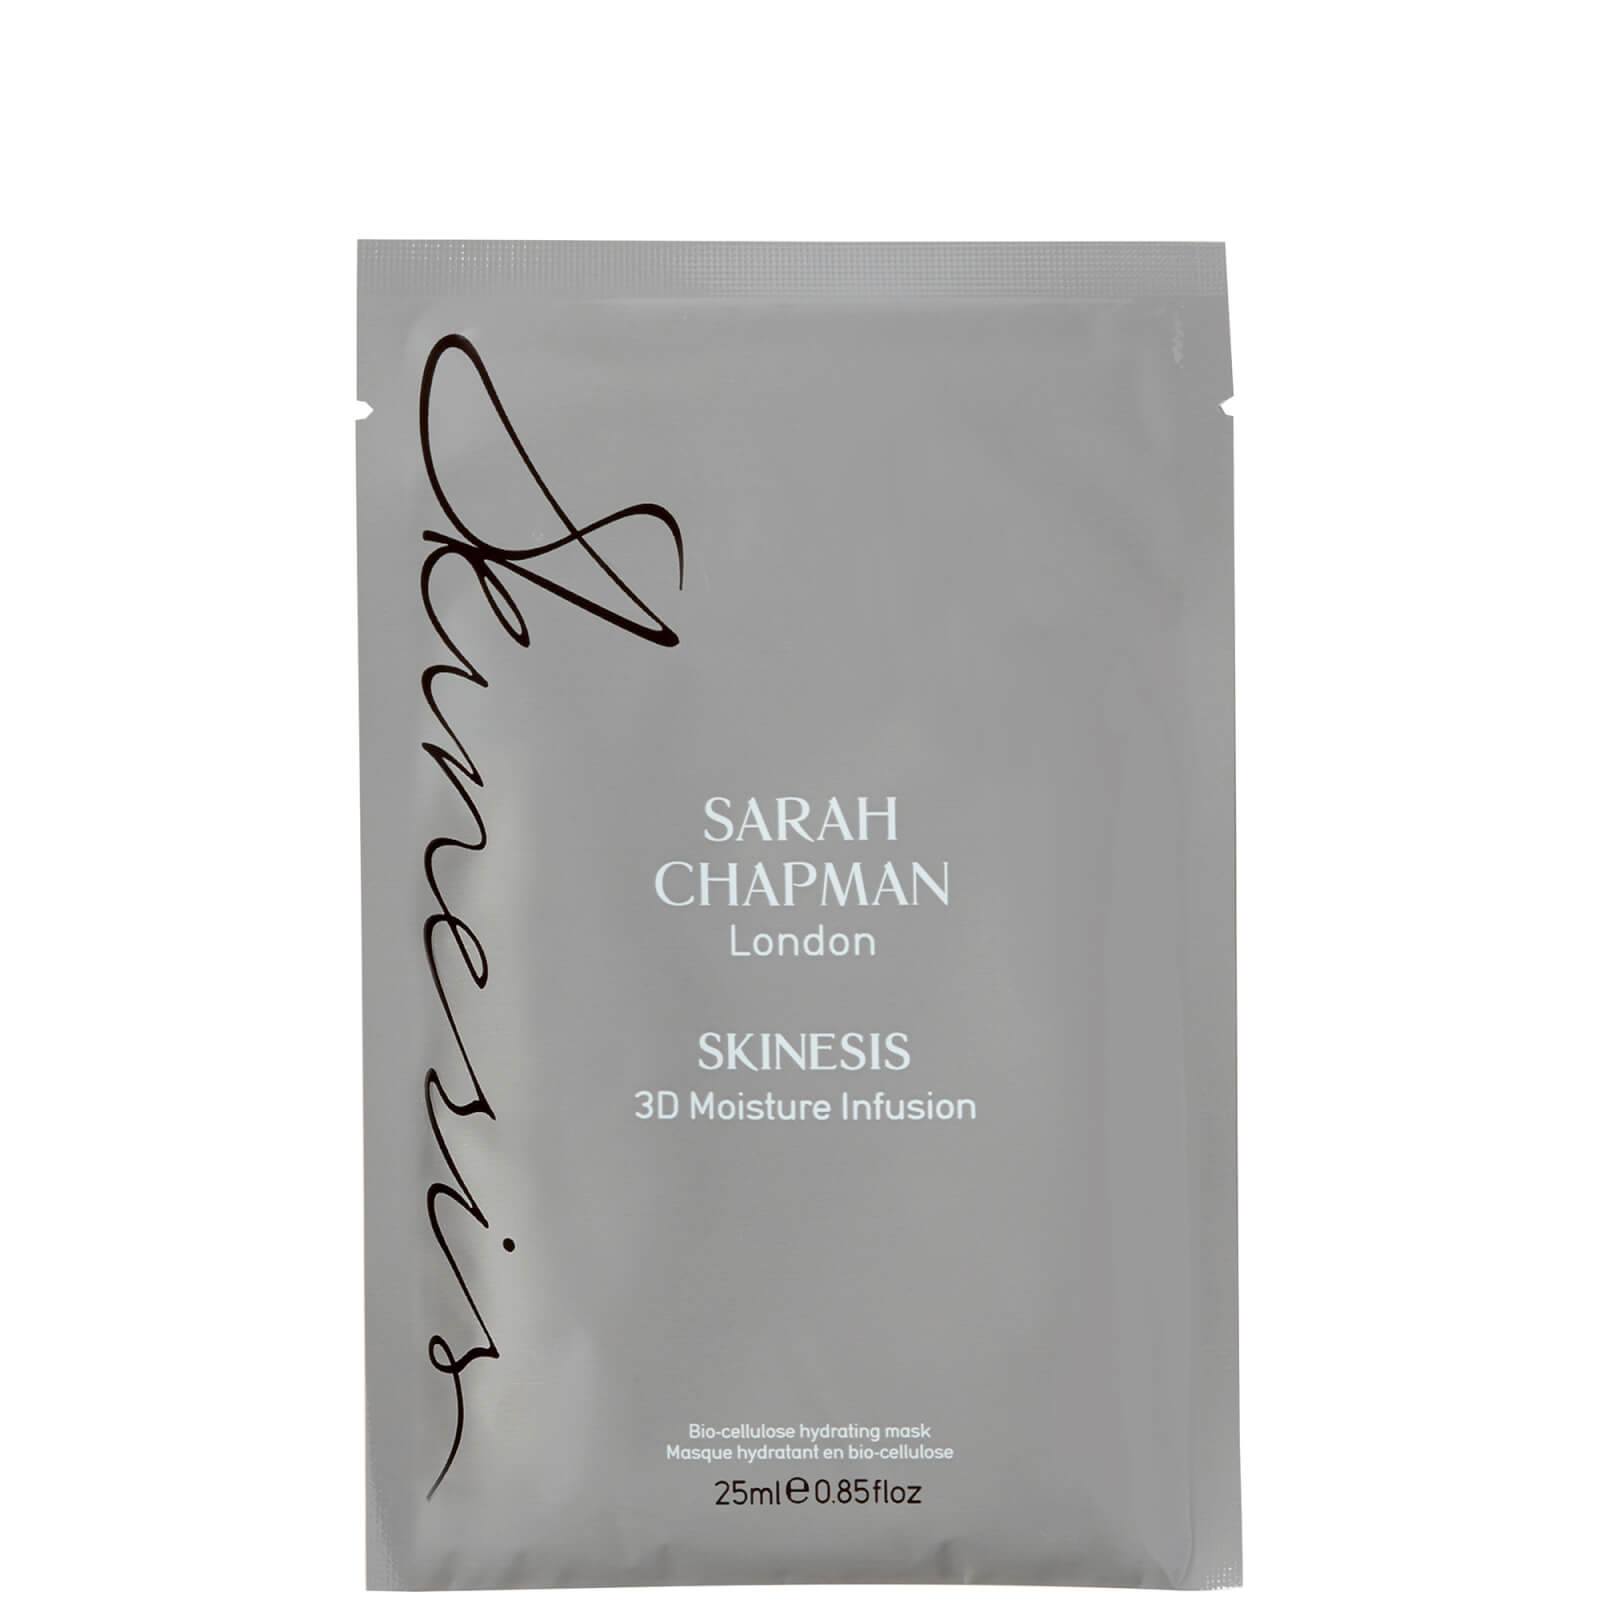 Sarah Chapman Skinesis Sarah Chapman 3d Moisture Infusion - Single 25ml